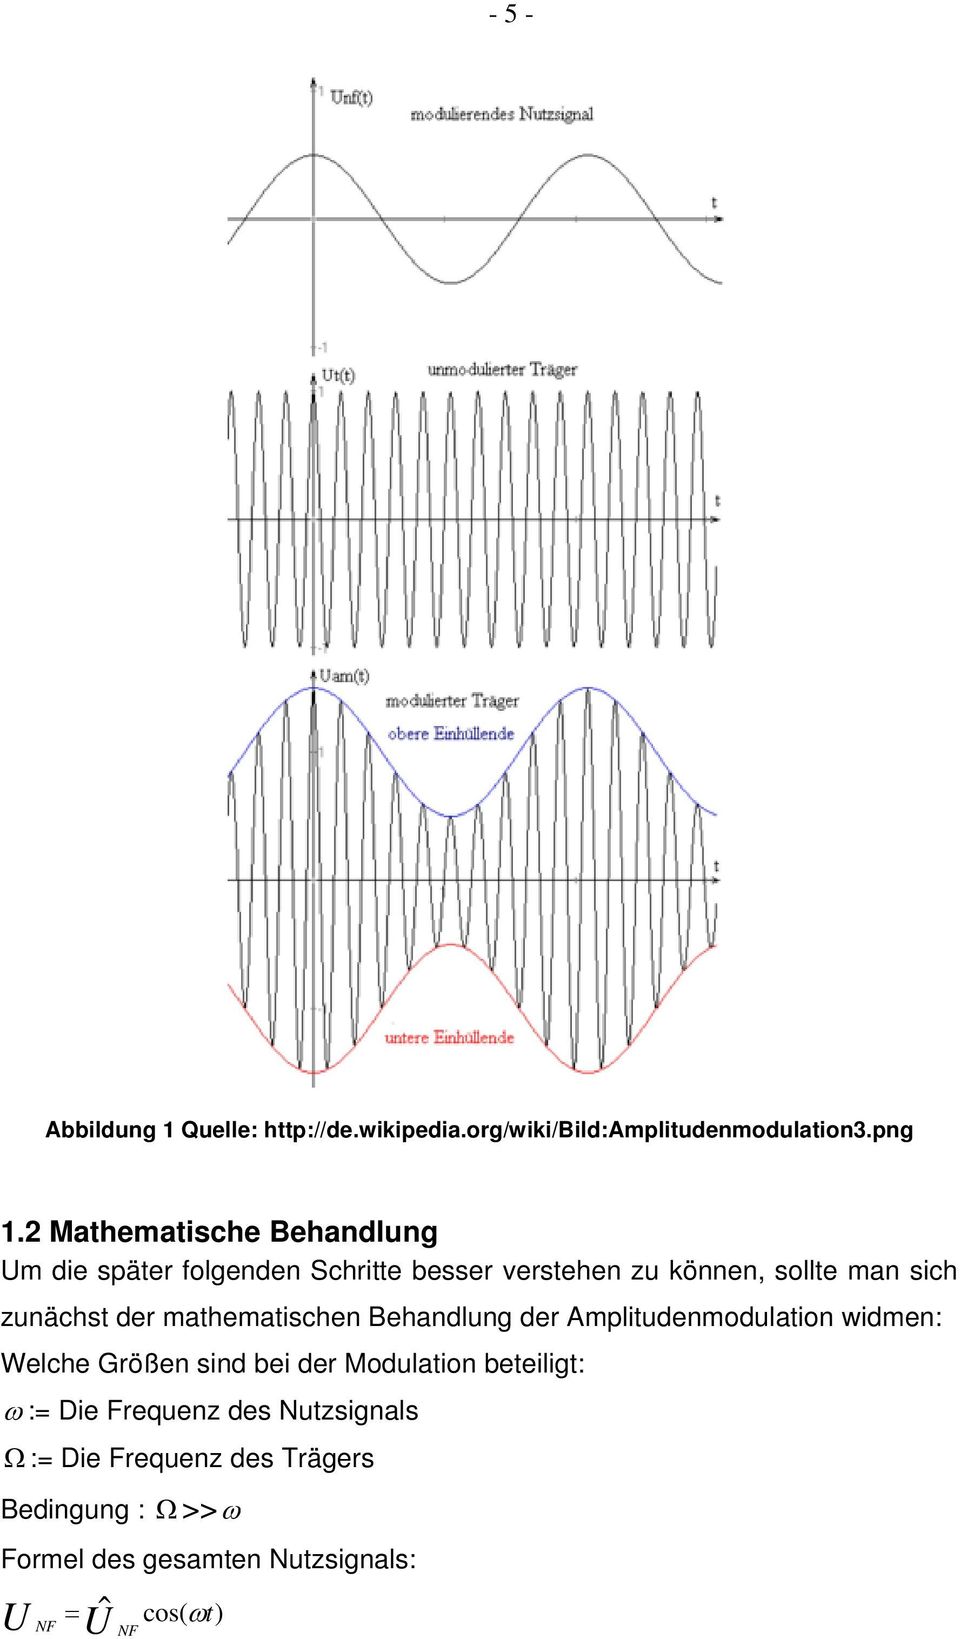 der mathematischen Behandlung der Amplitudenmodulation widmen: Welche Größen sind bei der Modulation beteiligt: